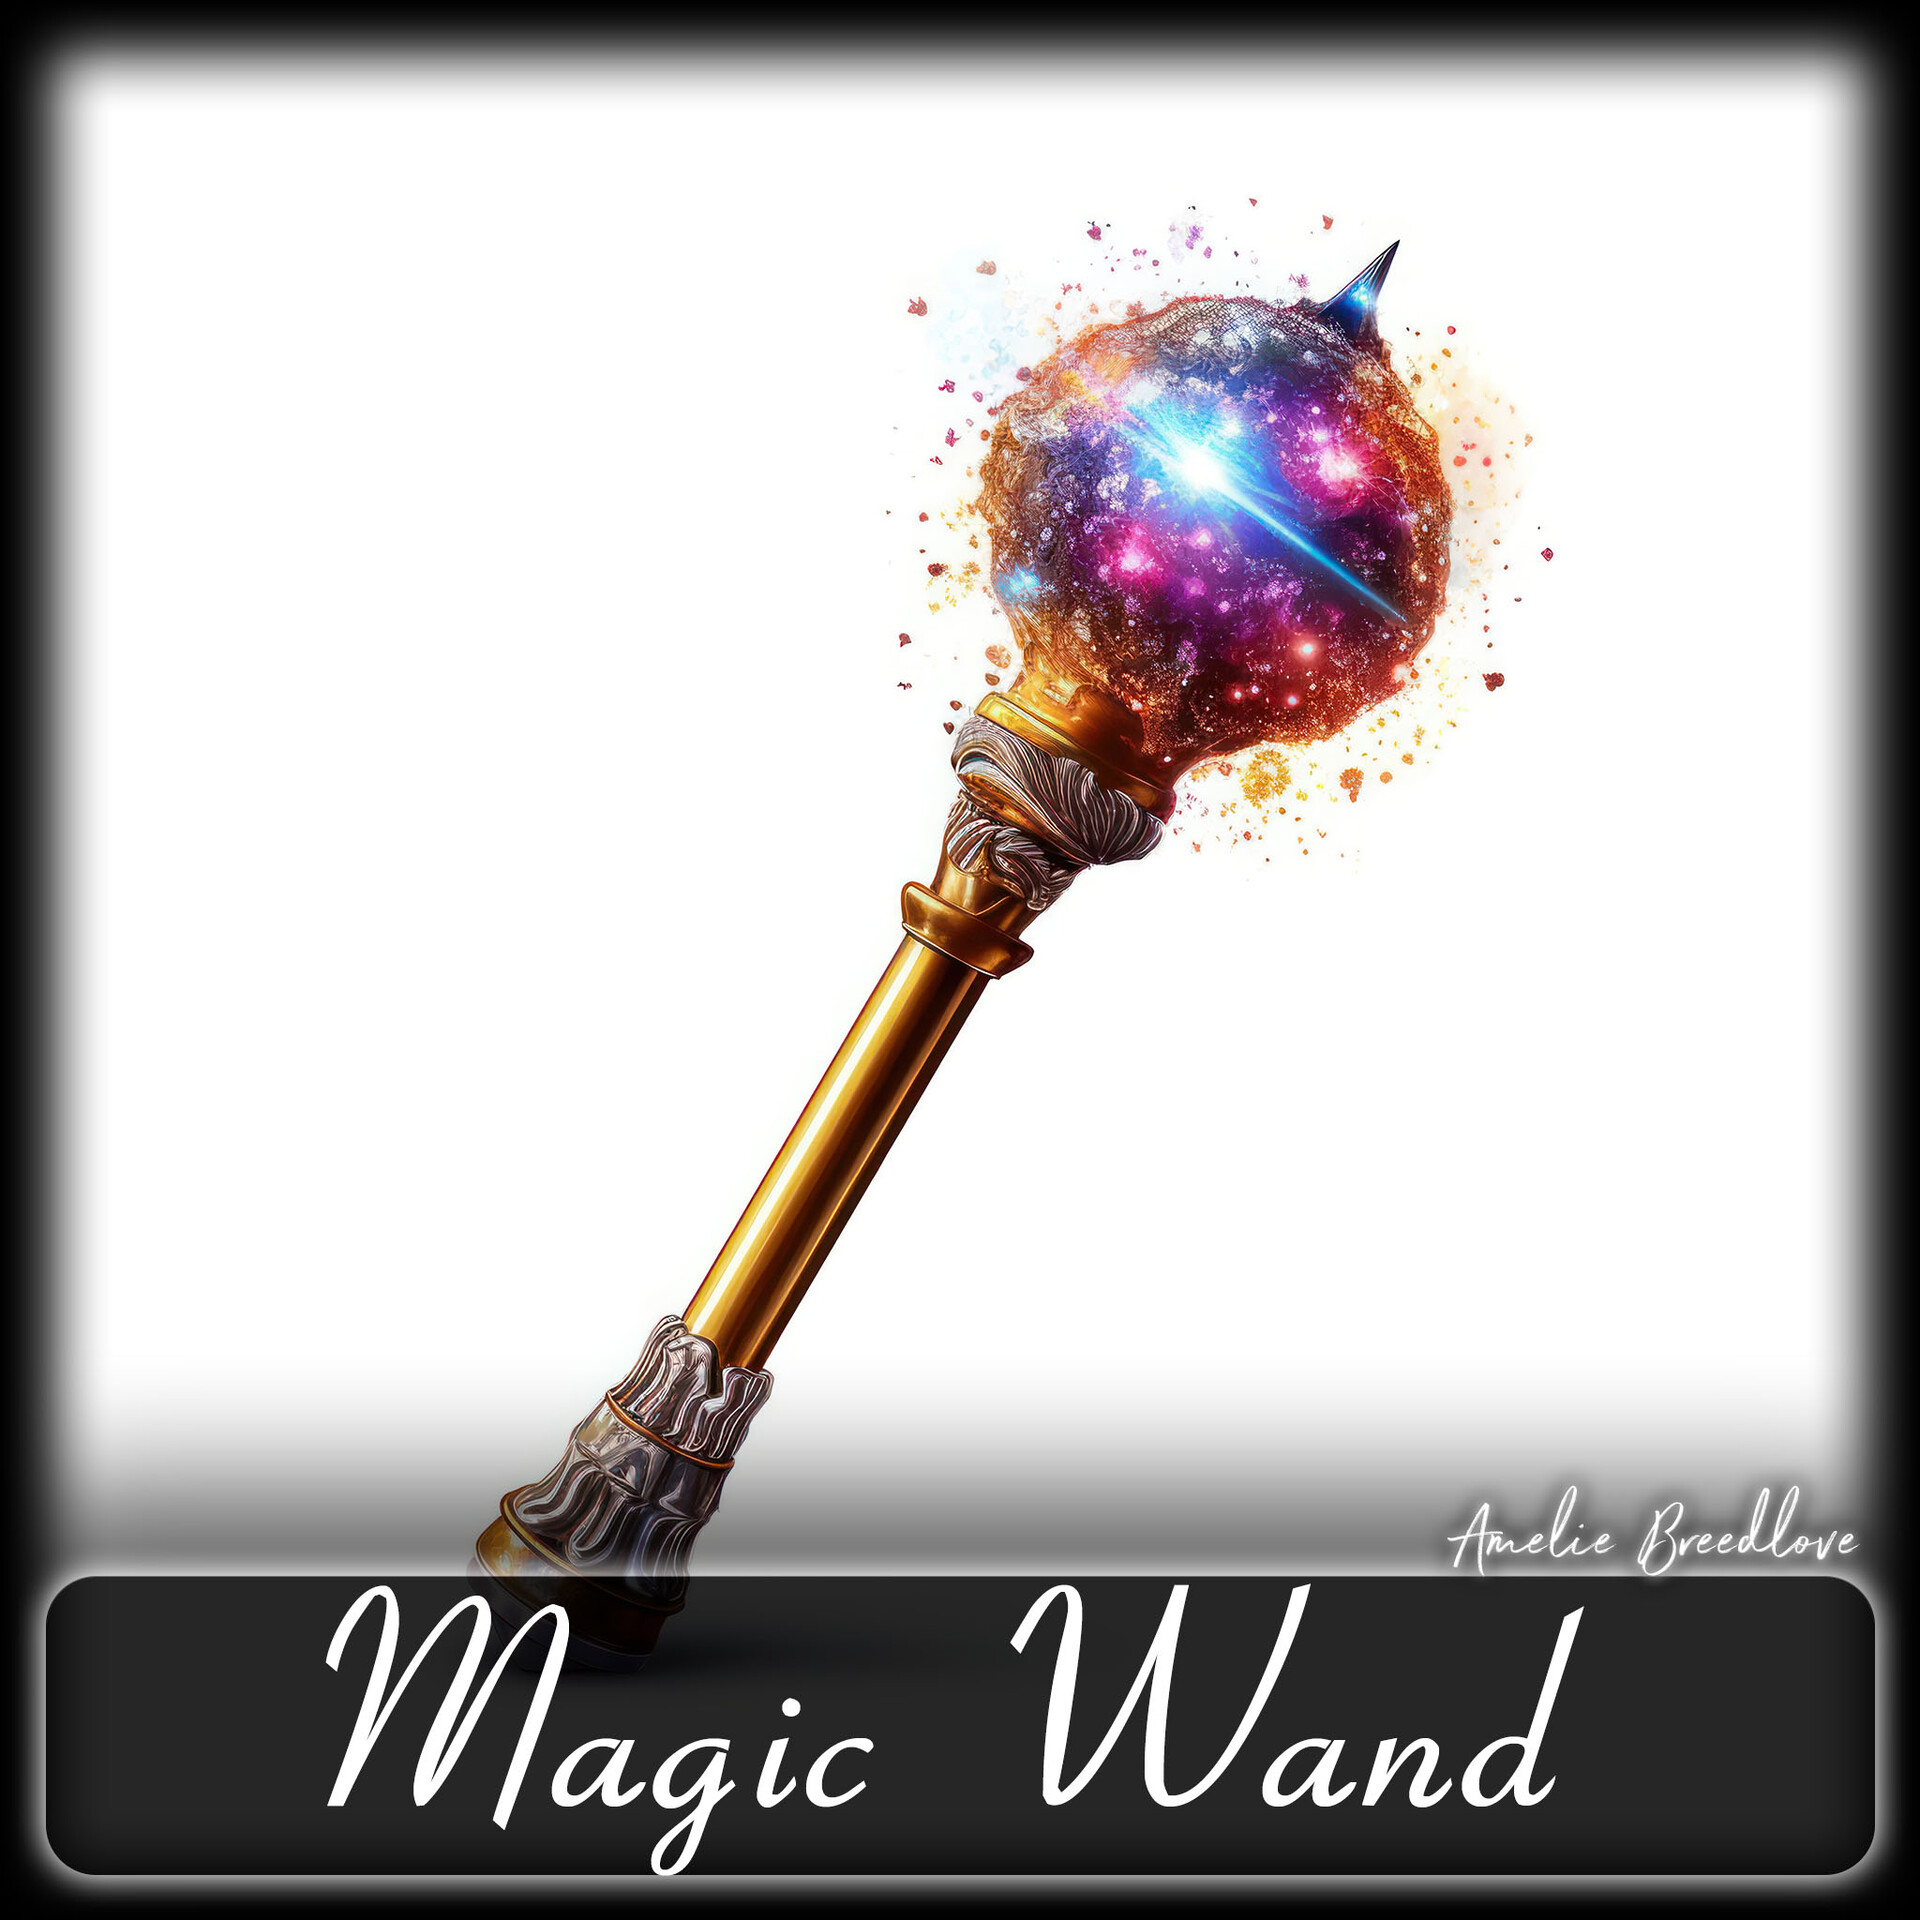 14 Magic Wand